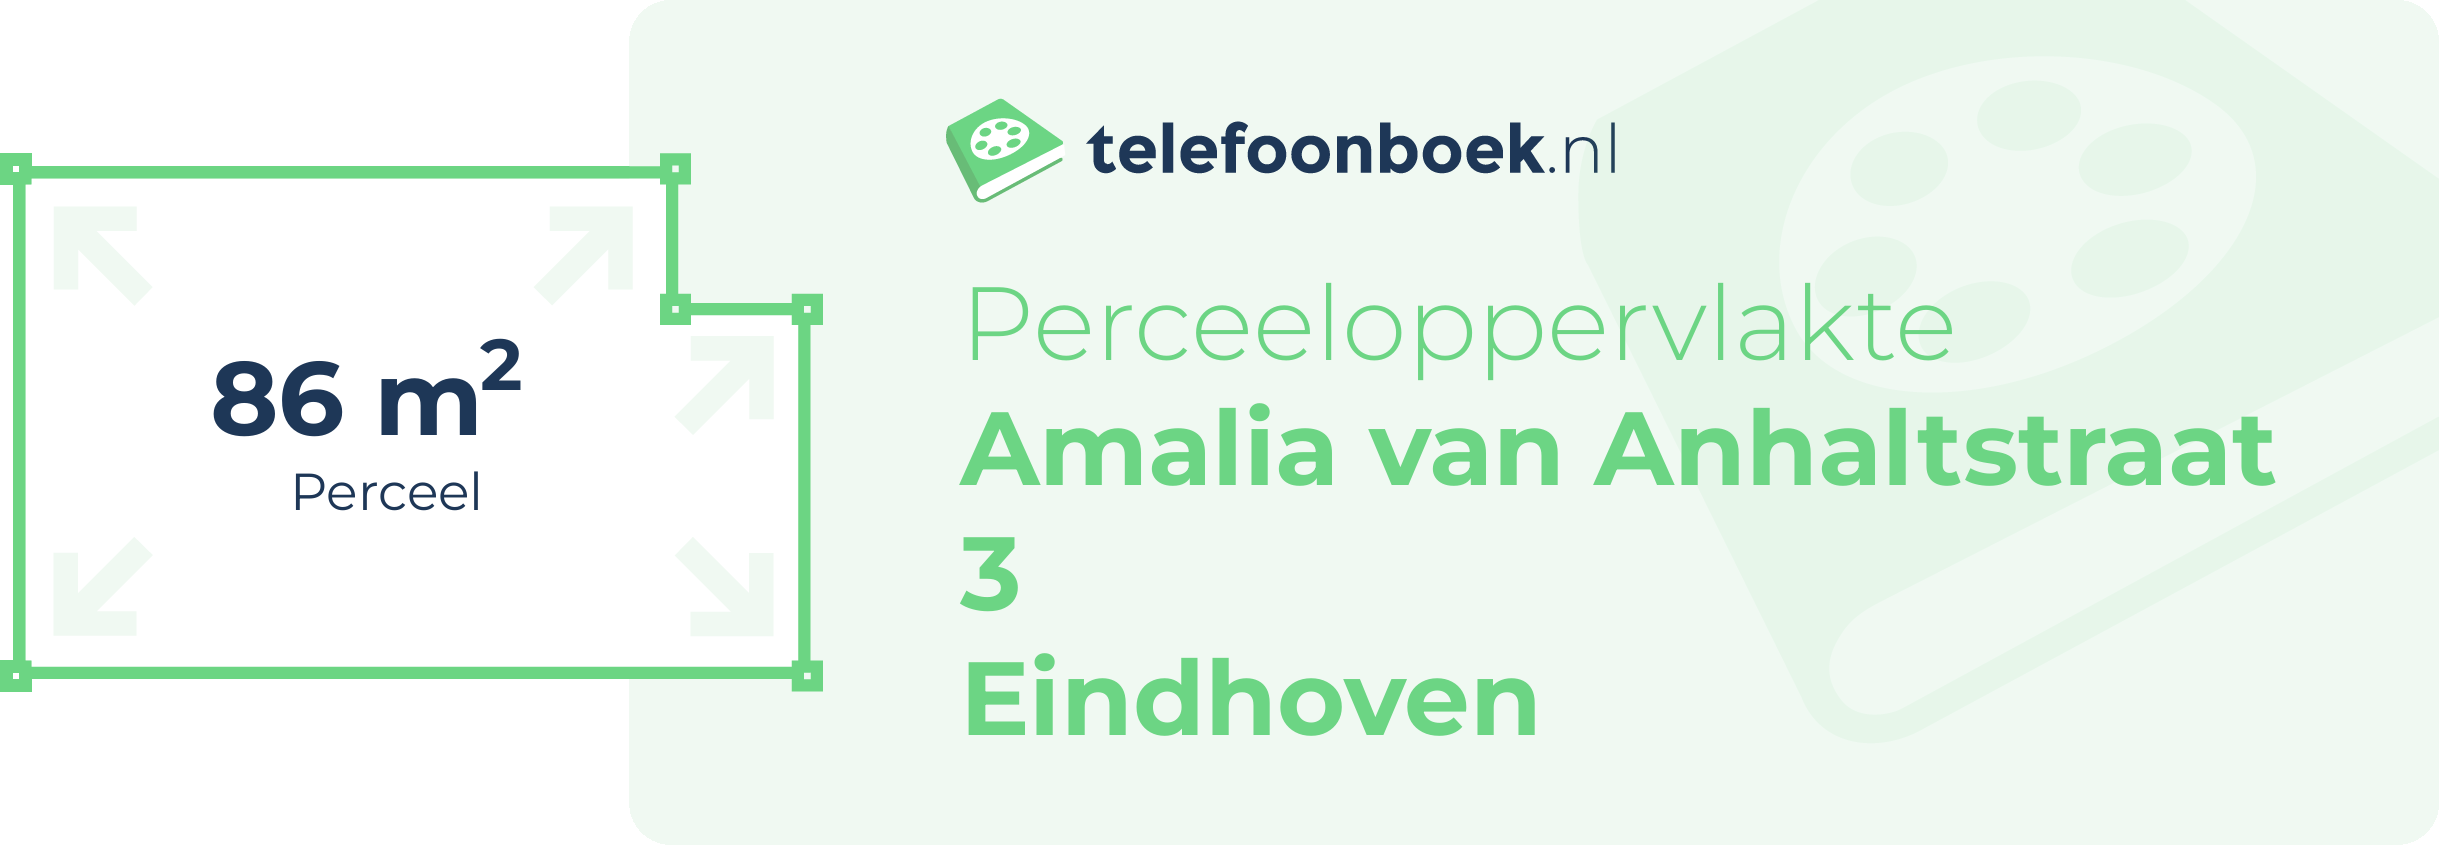 Perceeloppervlakte Amalia Van Anhaltstraat 3 Eindhoven